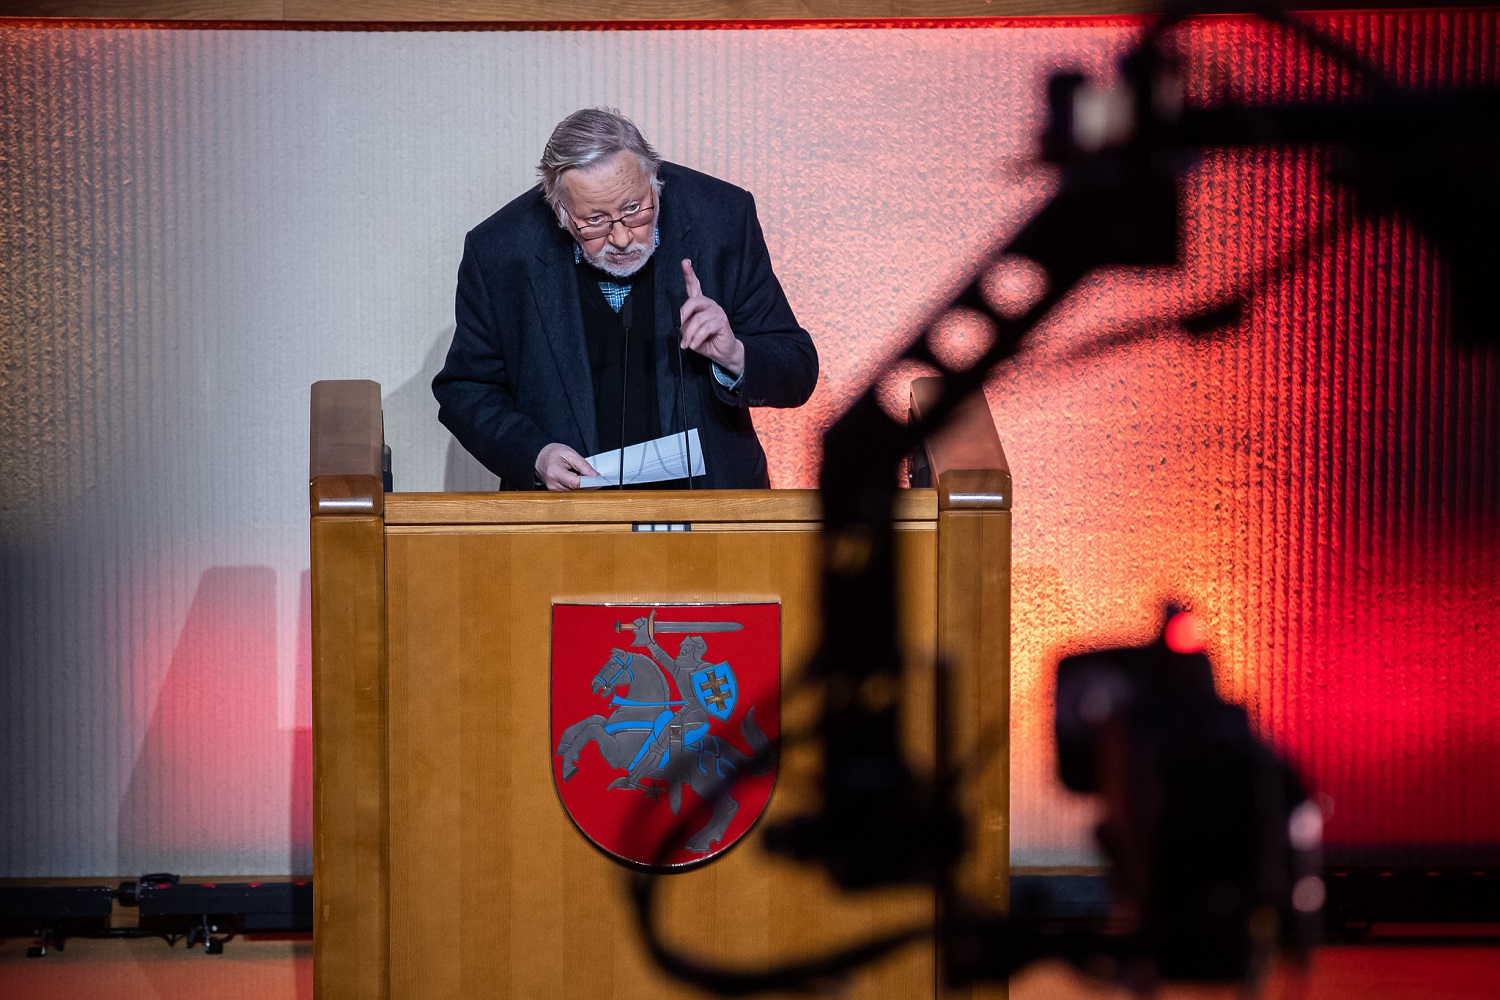 Valdantieji įvertino opozicijos grasinimus atšaukti valstybės vadovo statusą V. Landsbergiui: tai kvailystė